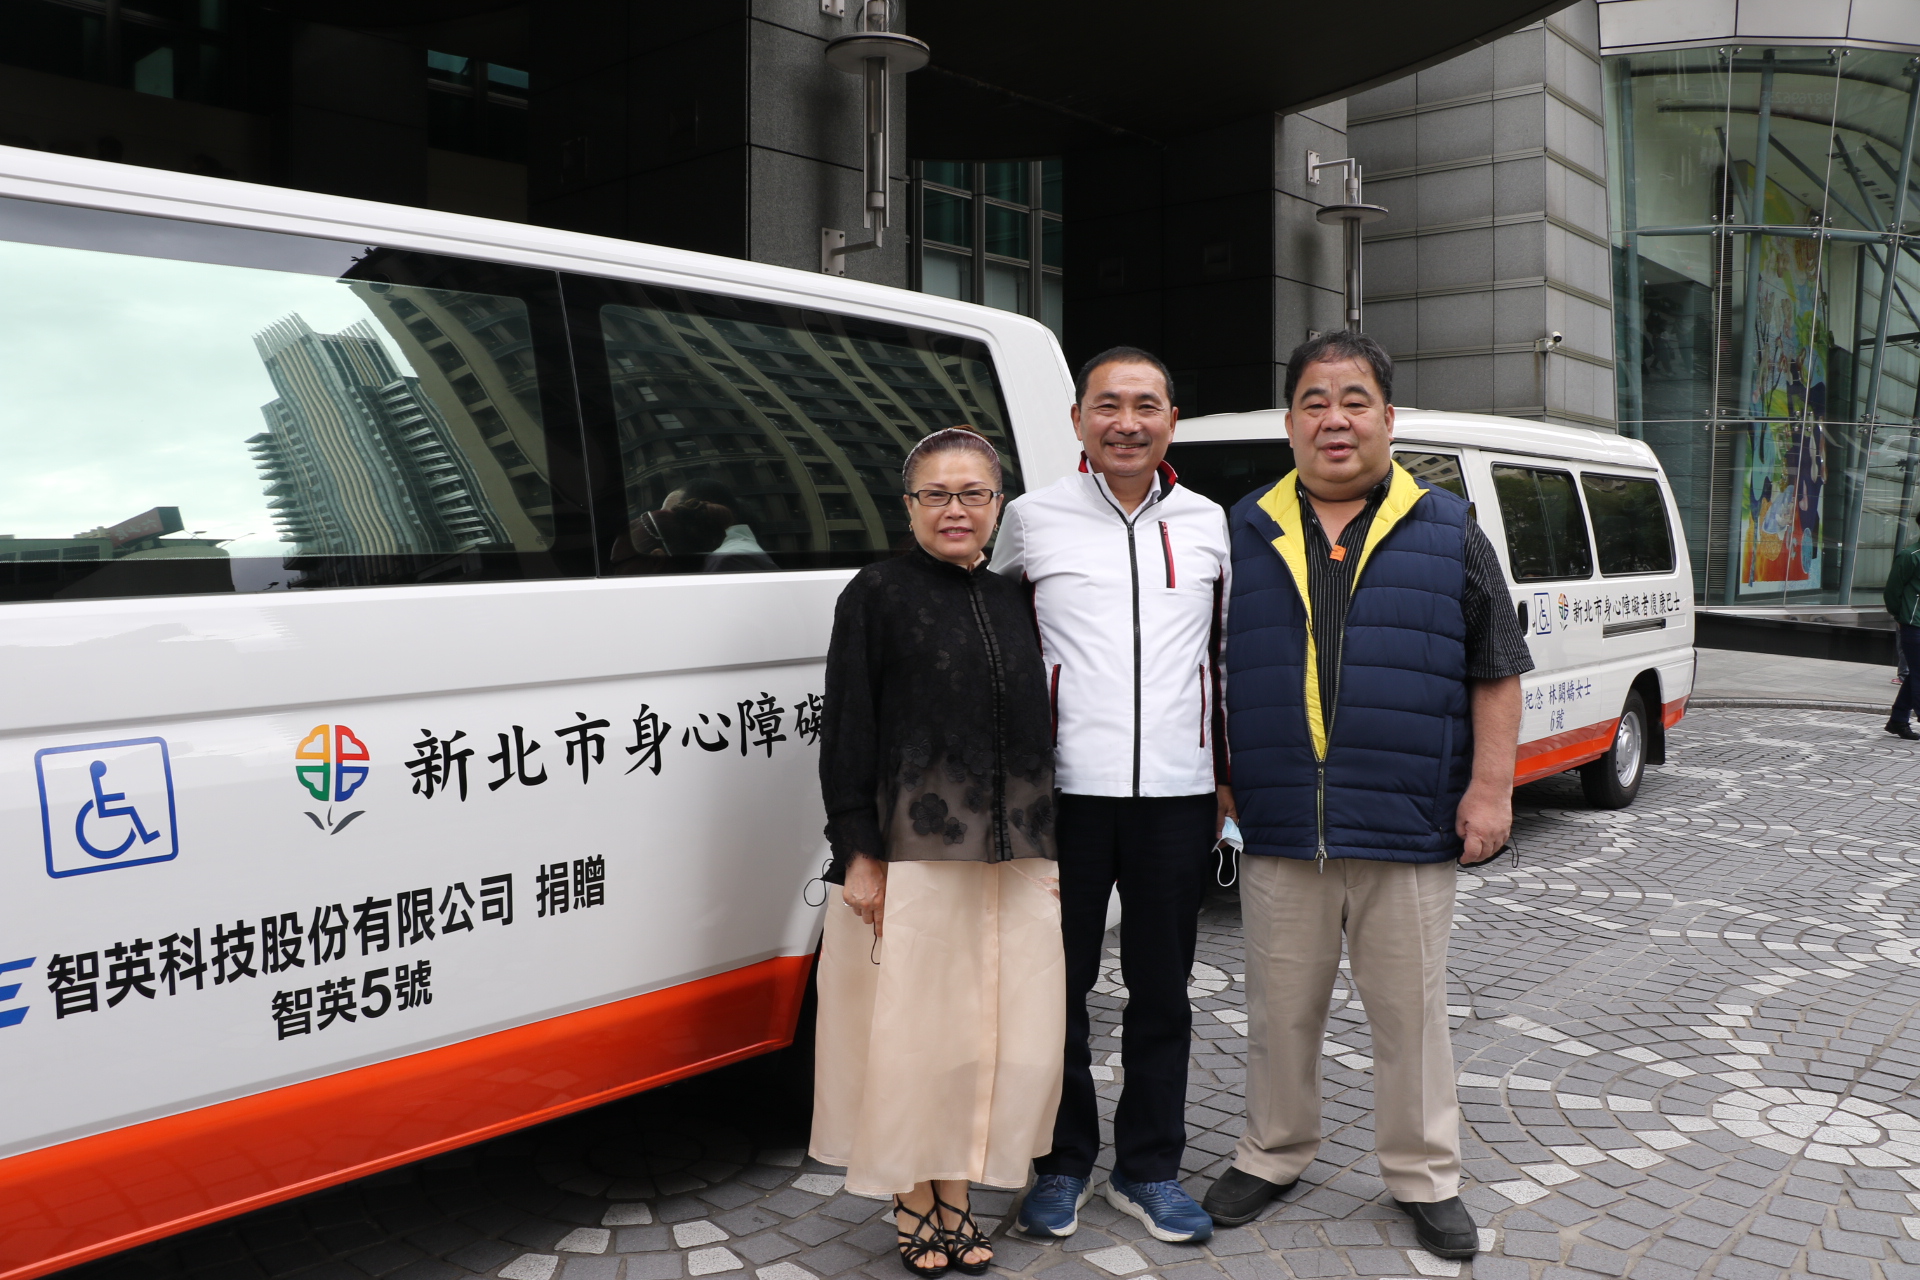 林宴臨和太太陳惠英再度捐贈2輛復康巴士  累計9輛